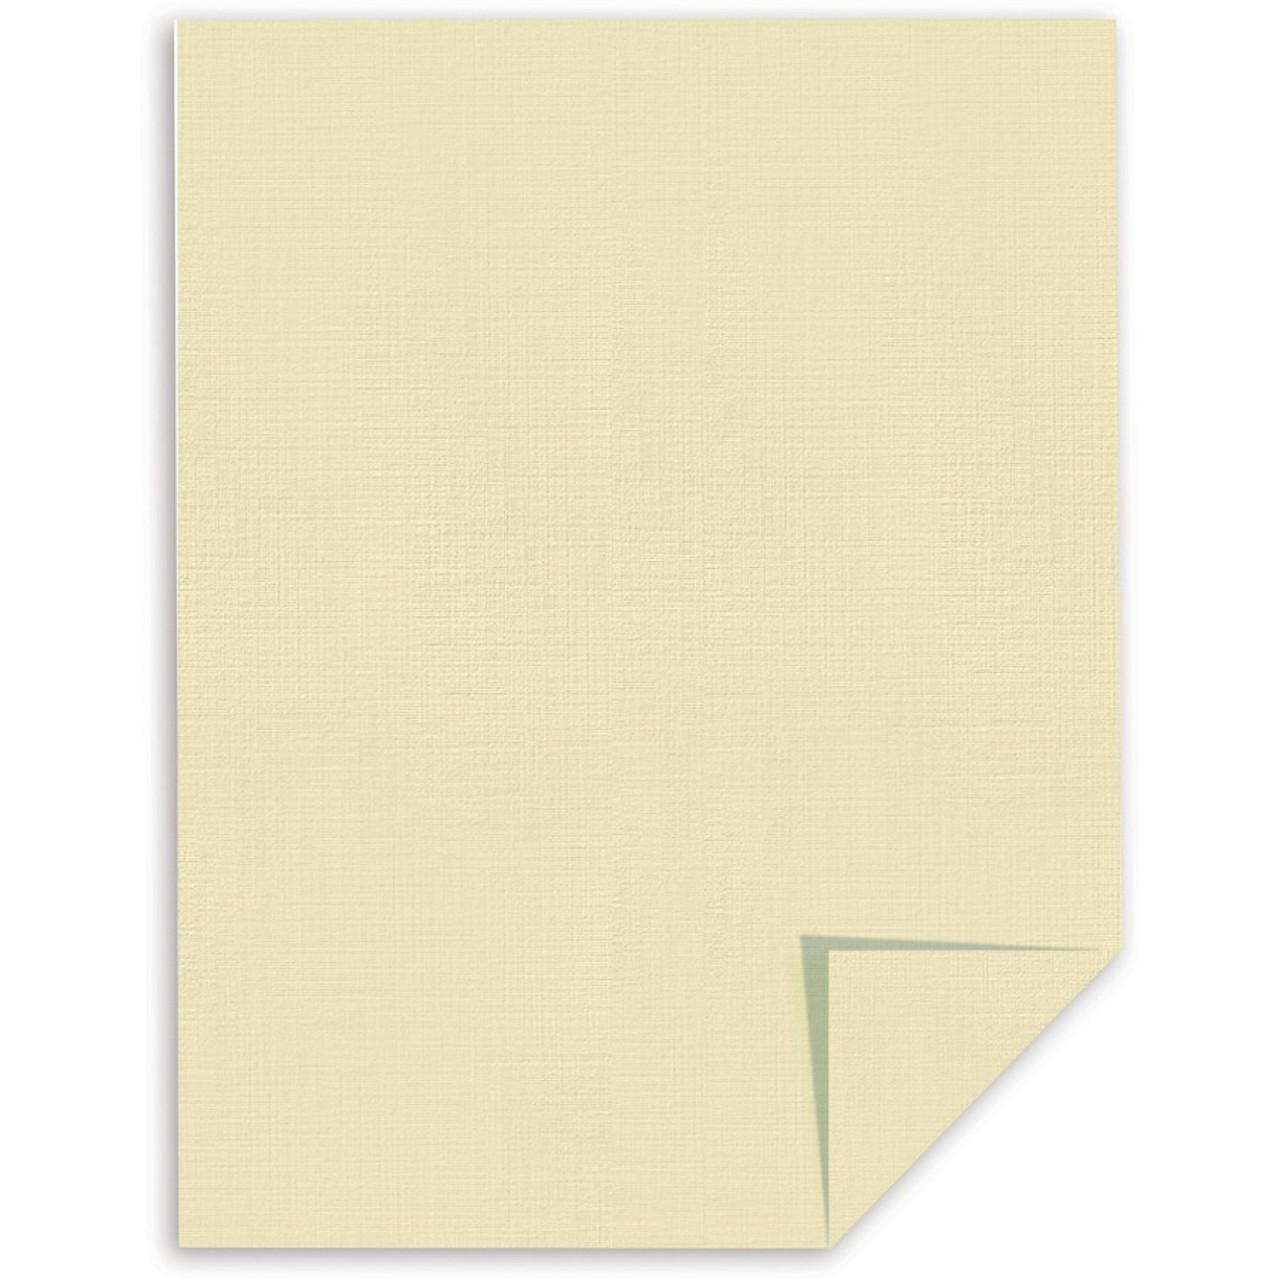 Southworth 564C 25% Cotton Linen Business Paper, Ivory, 24lb, 8 1/2 x 11,  500 Sheets - 564C